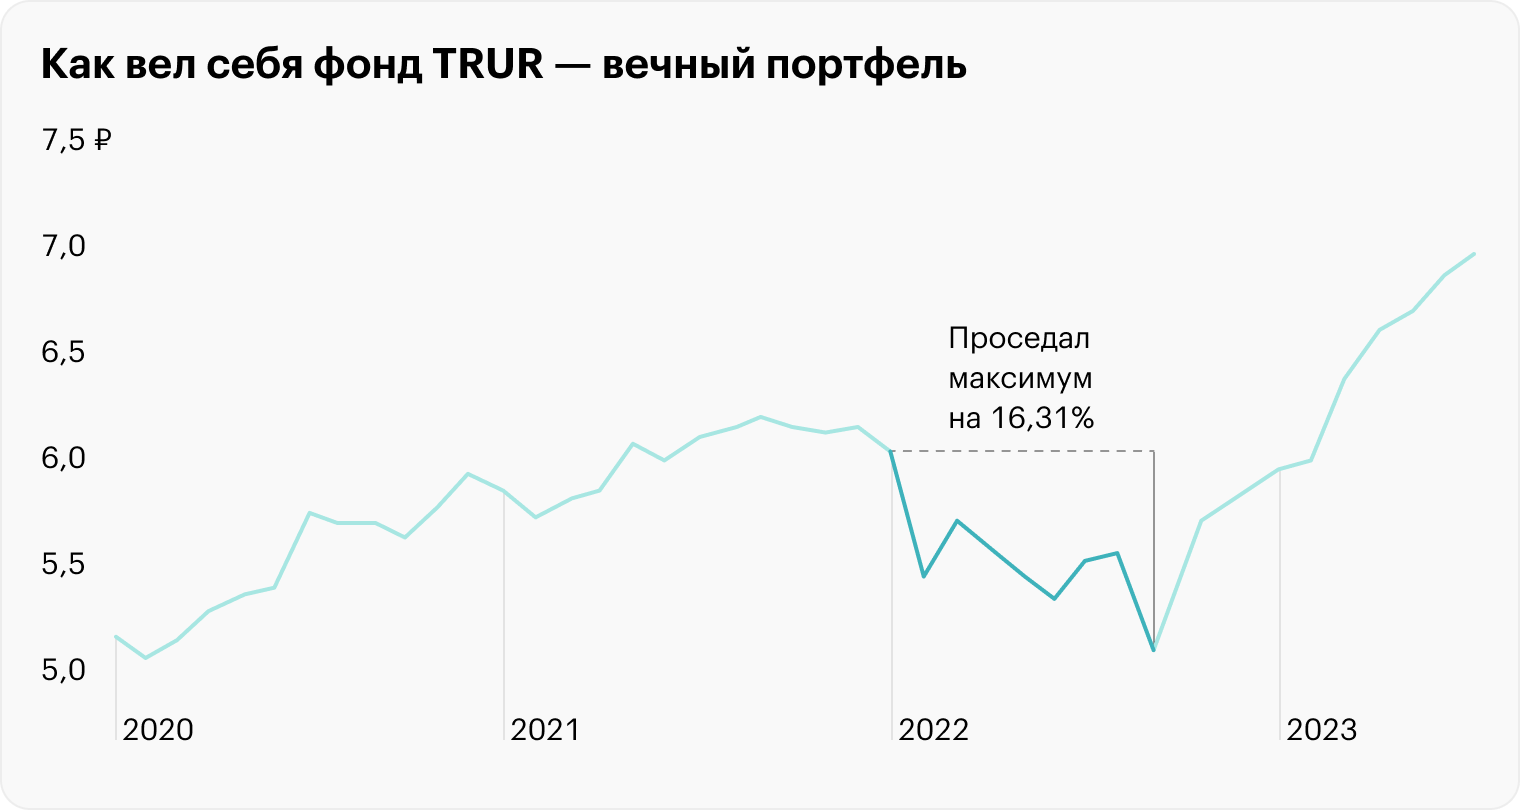 Если посмотреть на российский рынок, фонд Тинькофф Вечный портфель (TRUR), который отдаленно воспроизводит концепцию всепогодного портфеля на российском рынке, в 2022 году проседал максимум на 16,31% с начала года. У его долларового аналога TUSD максимальная просадка — 14,2%. В конце 2022 года был отскок, и TRUR закончил год с минусом 7,69%, а TUSD — 8,58%. Источник: Тинькофф Инвестиции